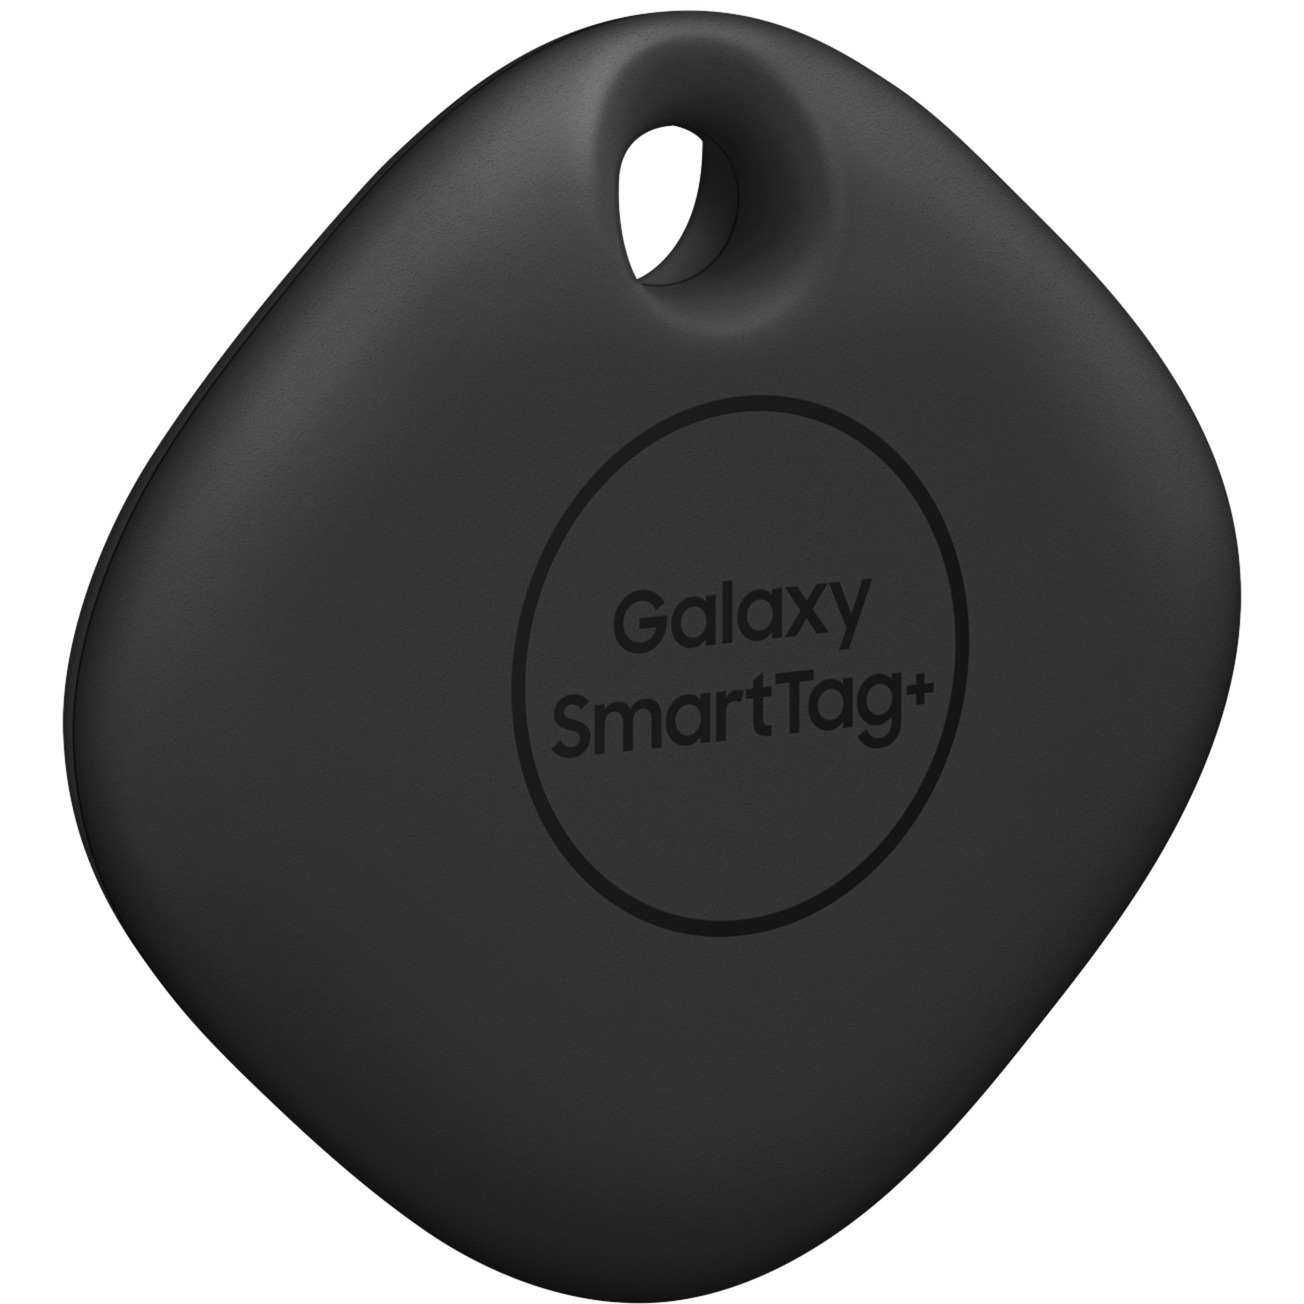 Image of Alternate - Galaxy SmartTag+ EI-T7300, Ortungstracker online einkaufen bei Alternate